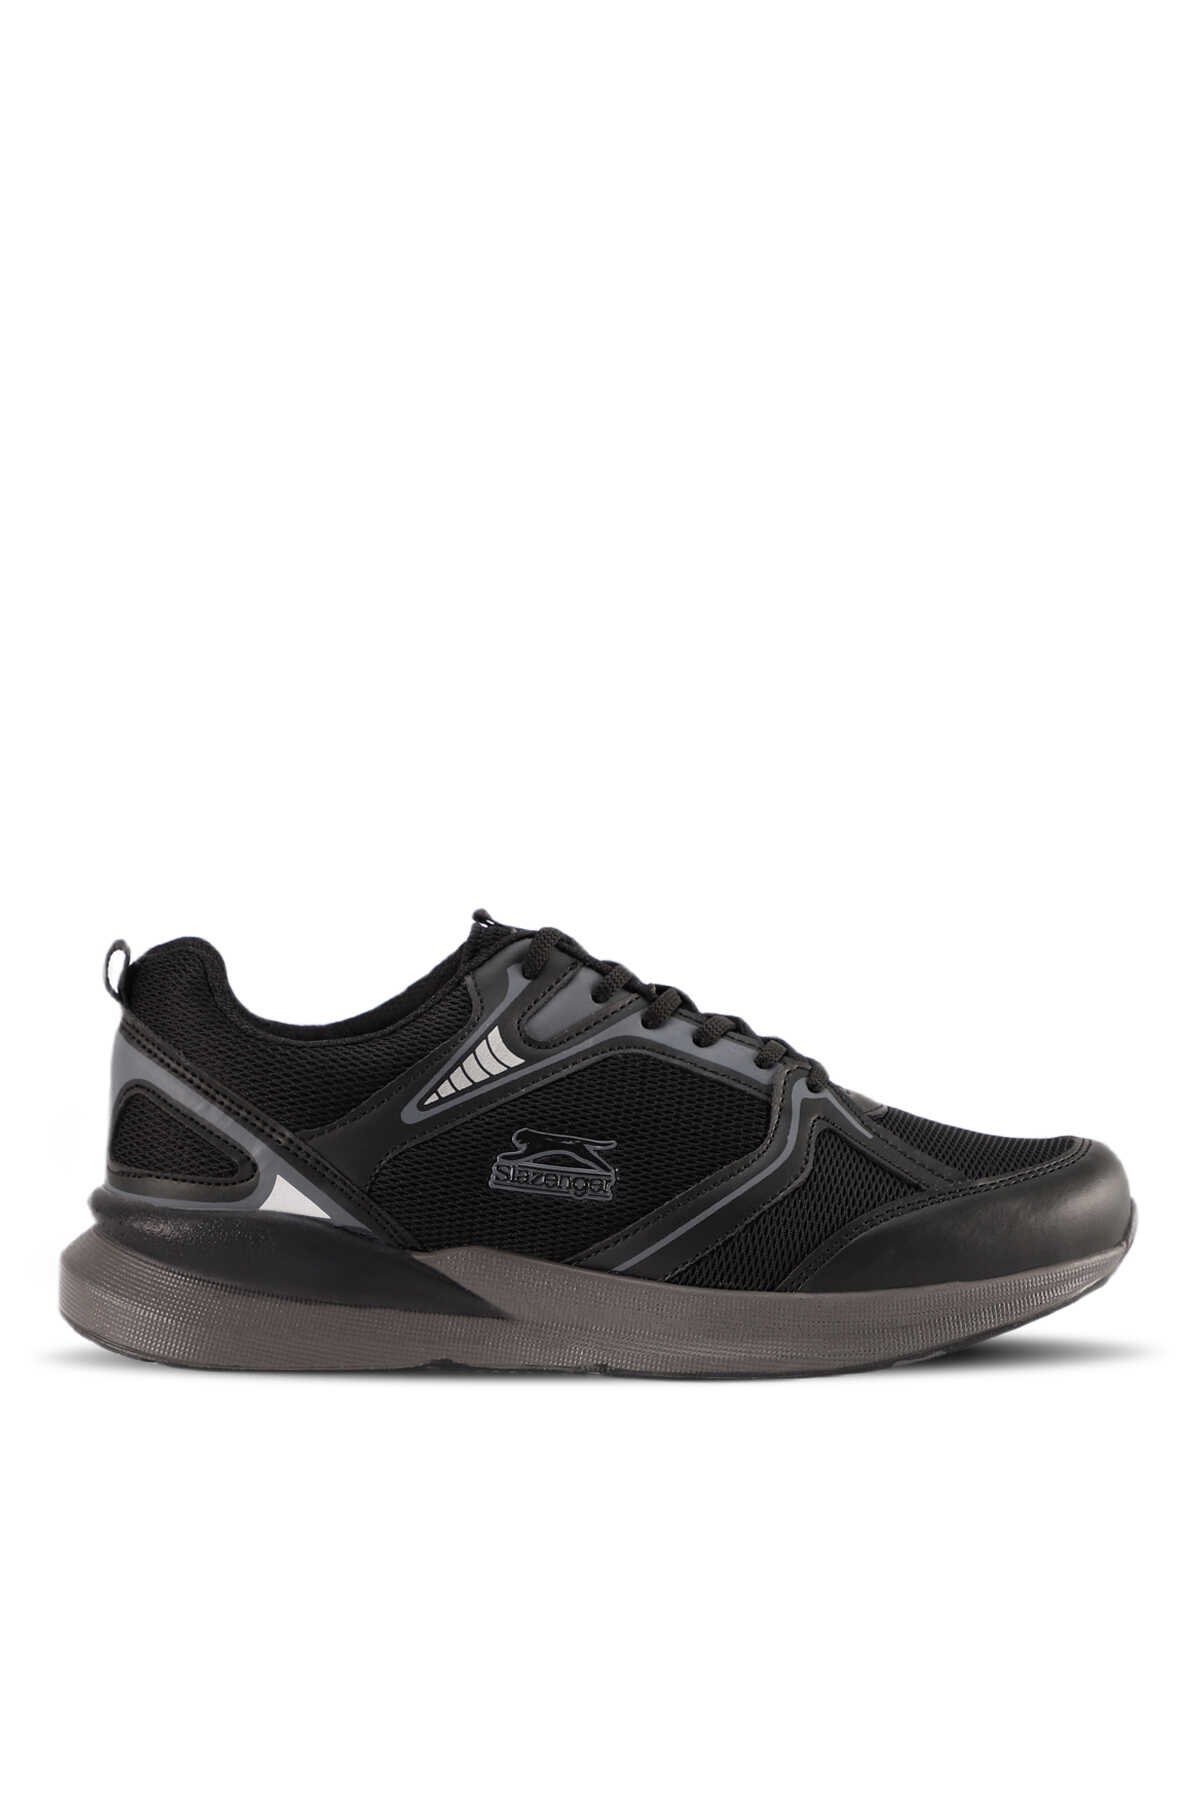 Slazenger - MELBA I Sneaker Erkek Ayakkabı Siyah / Siyah